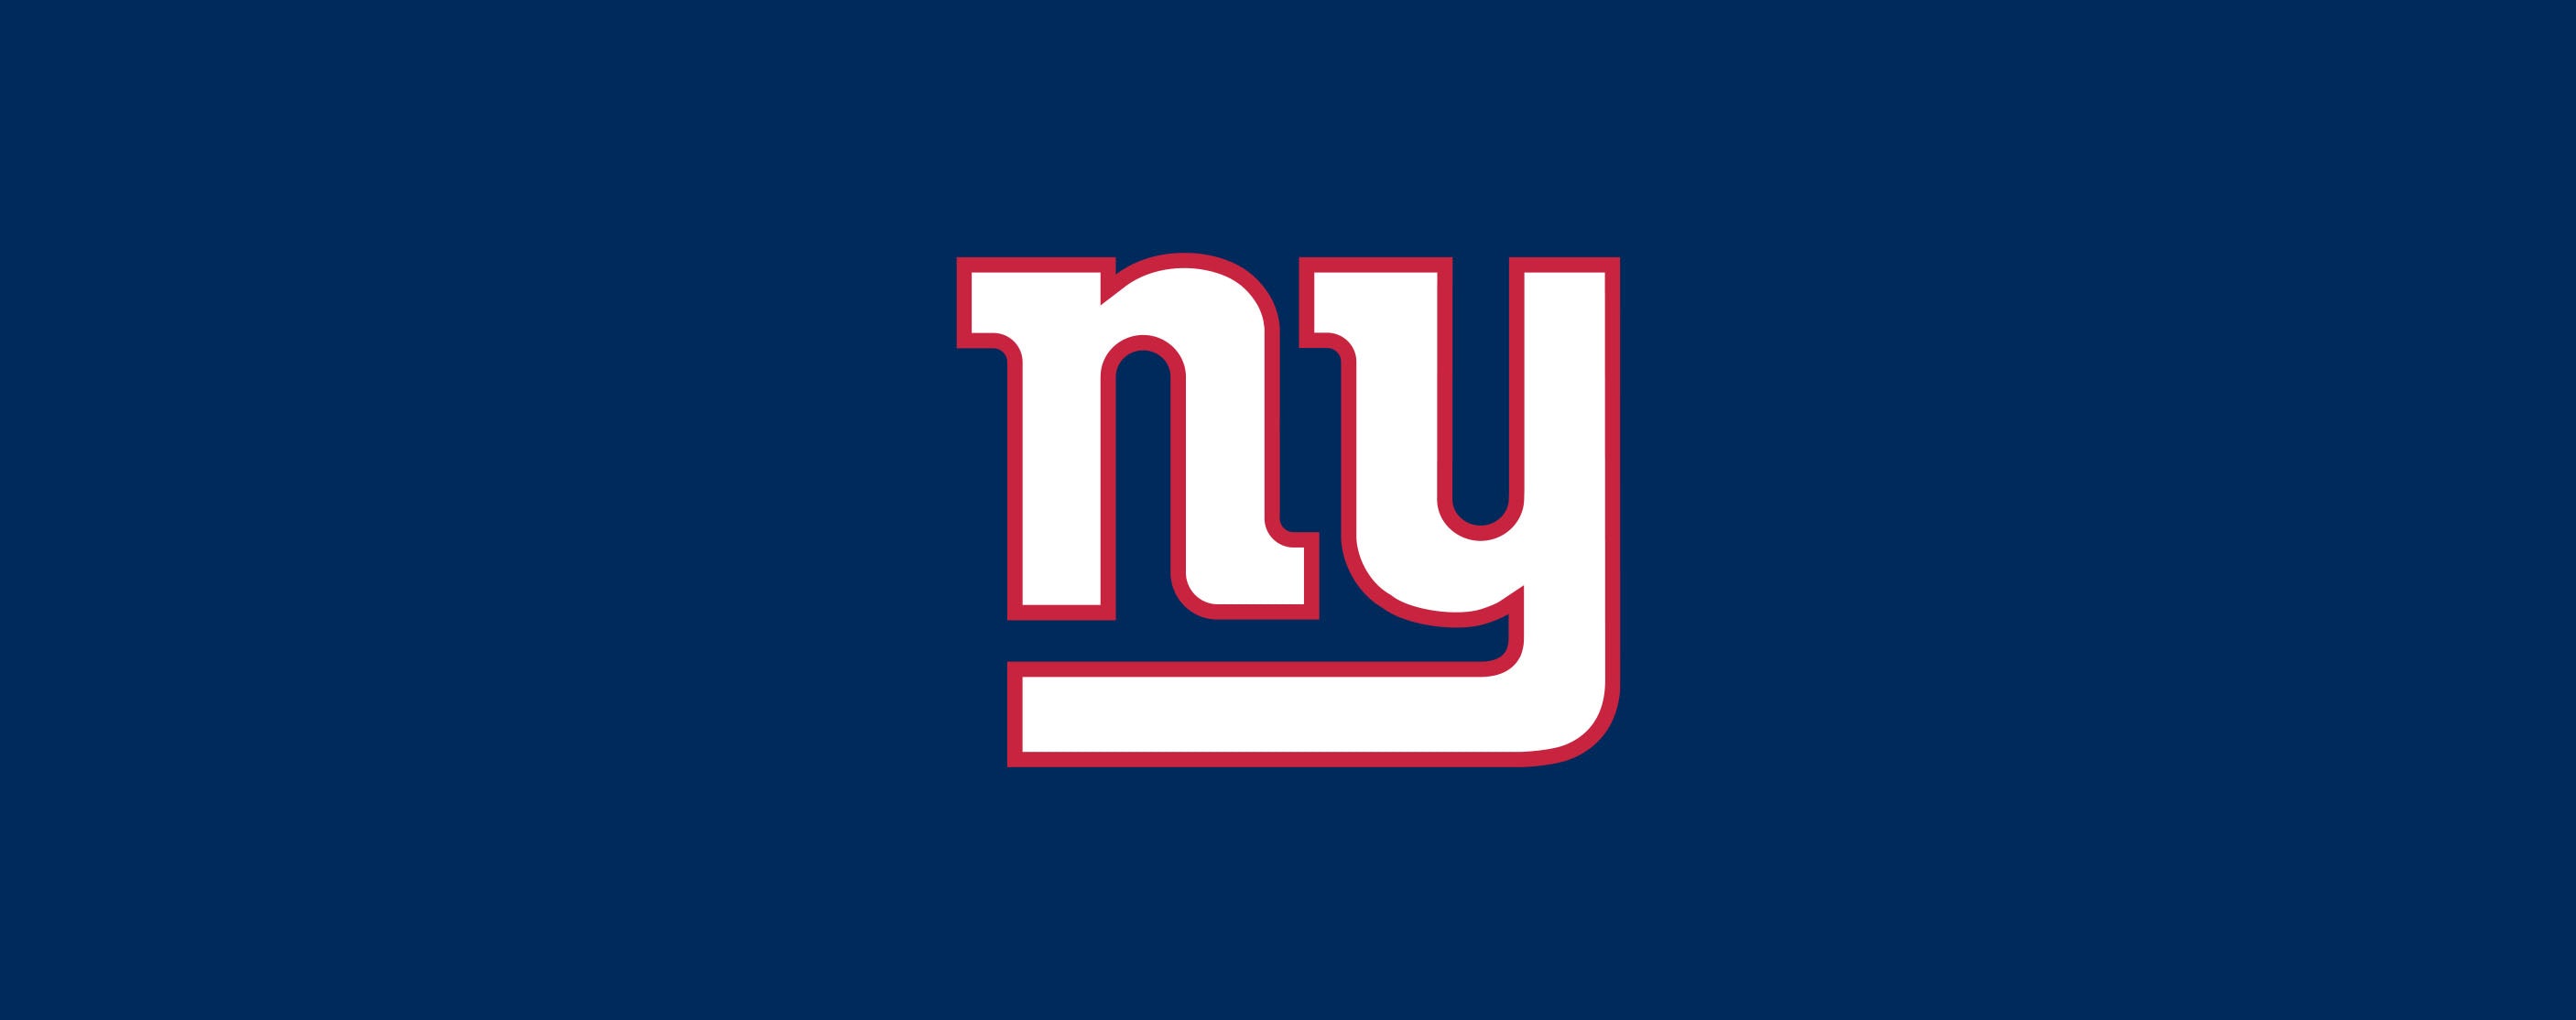 New York Giants – For Bare Feet